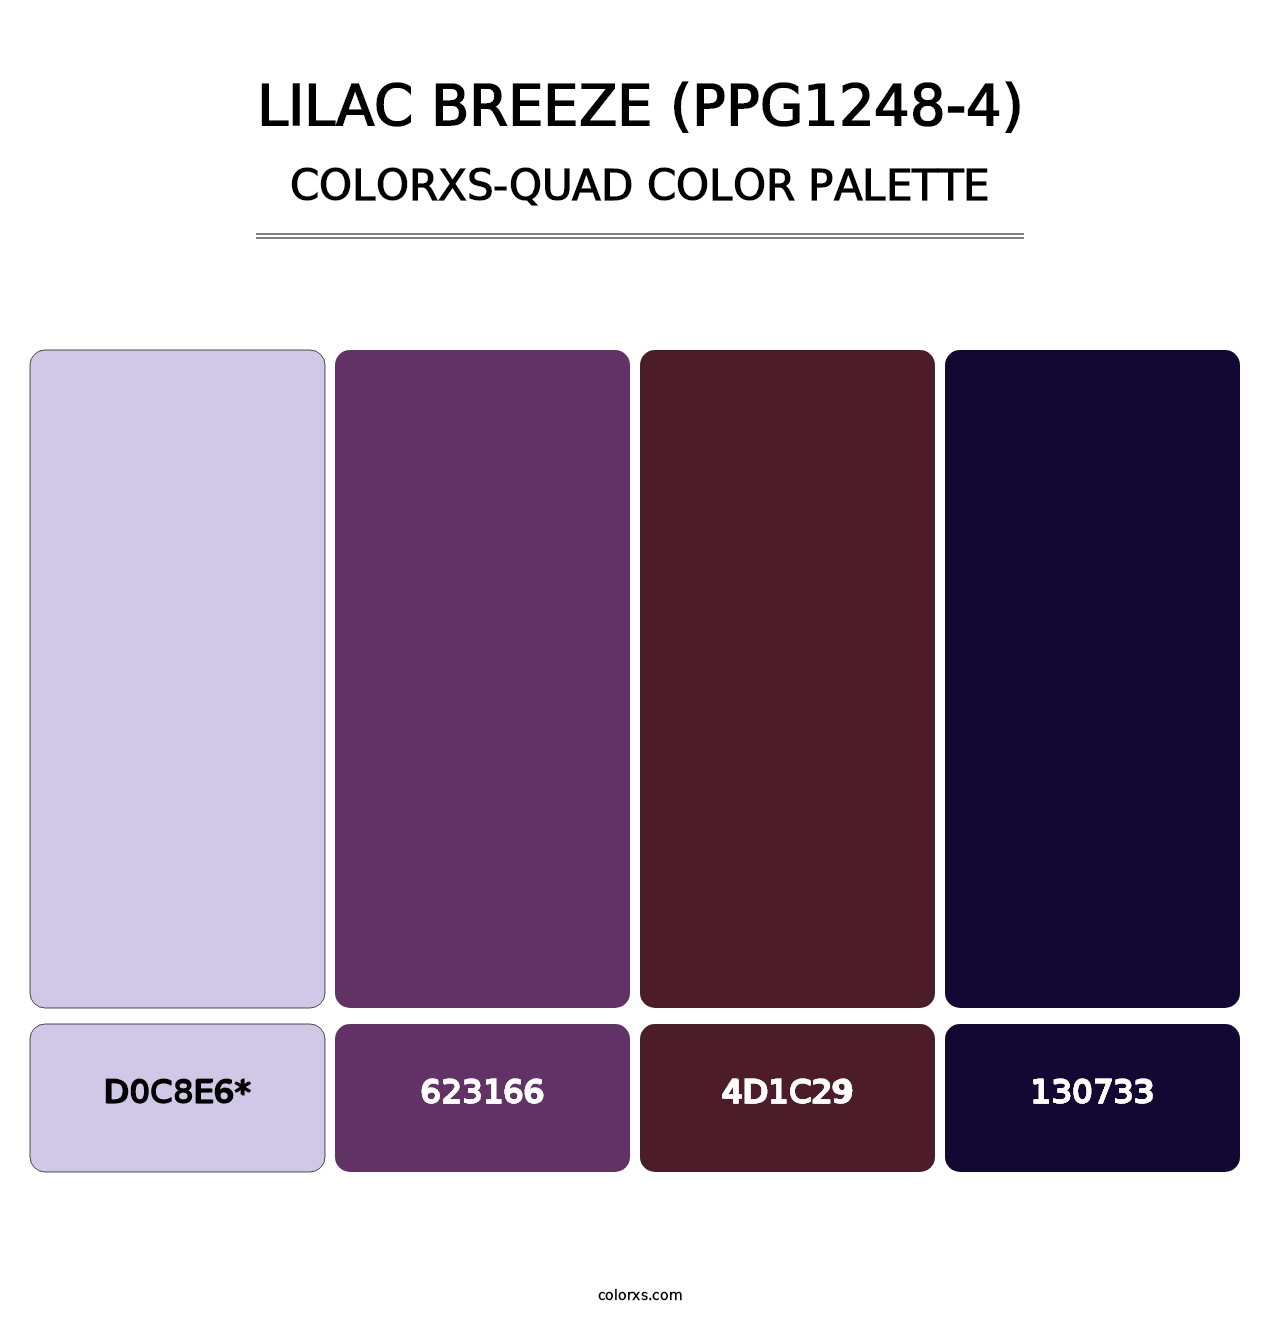 Lilac Breeze (PPG1248-4) - Colorxs Quad Palette